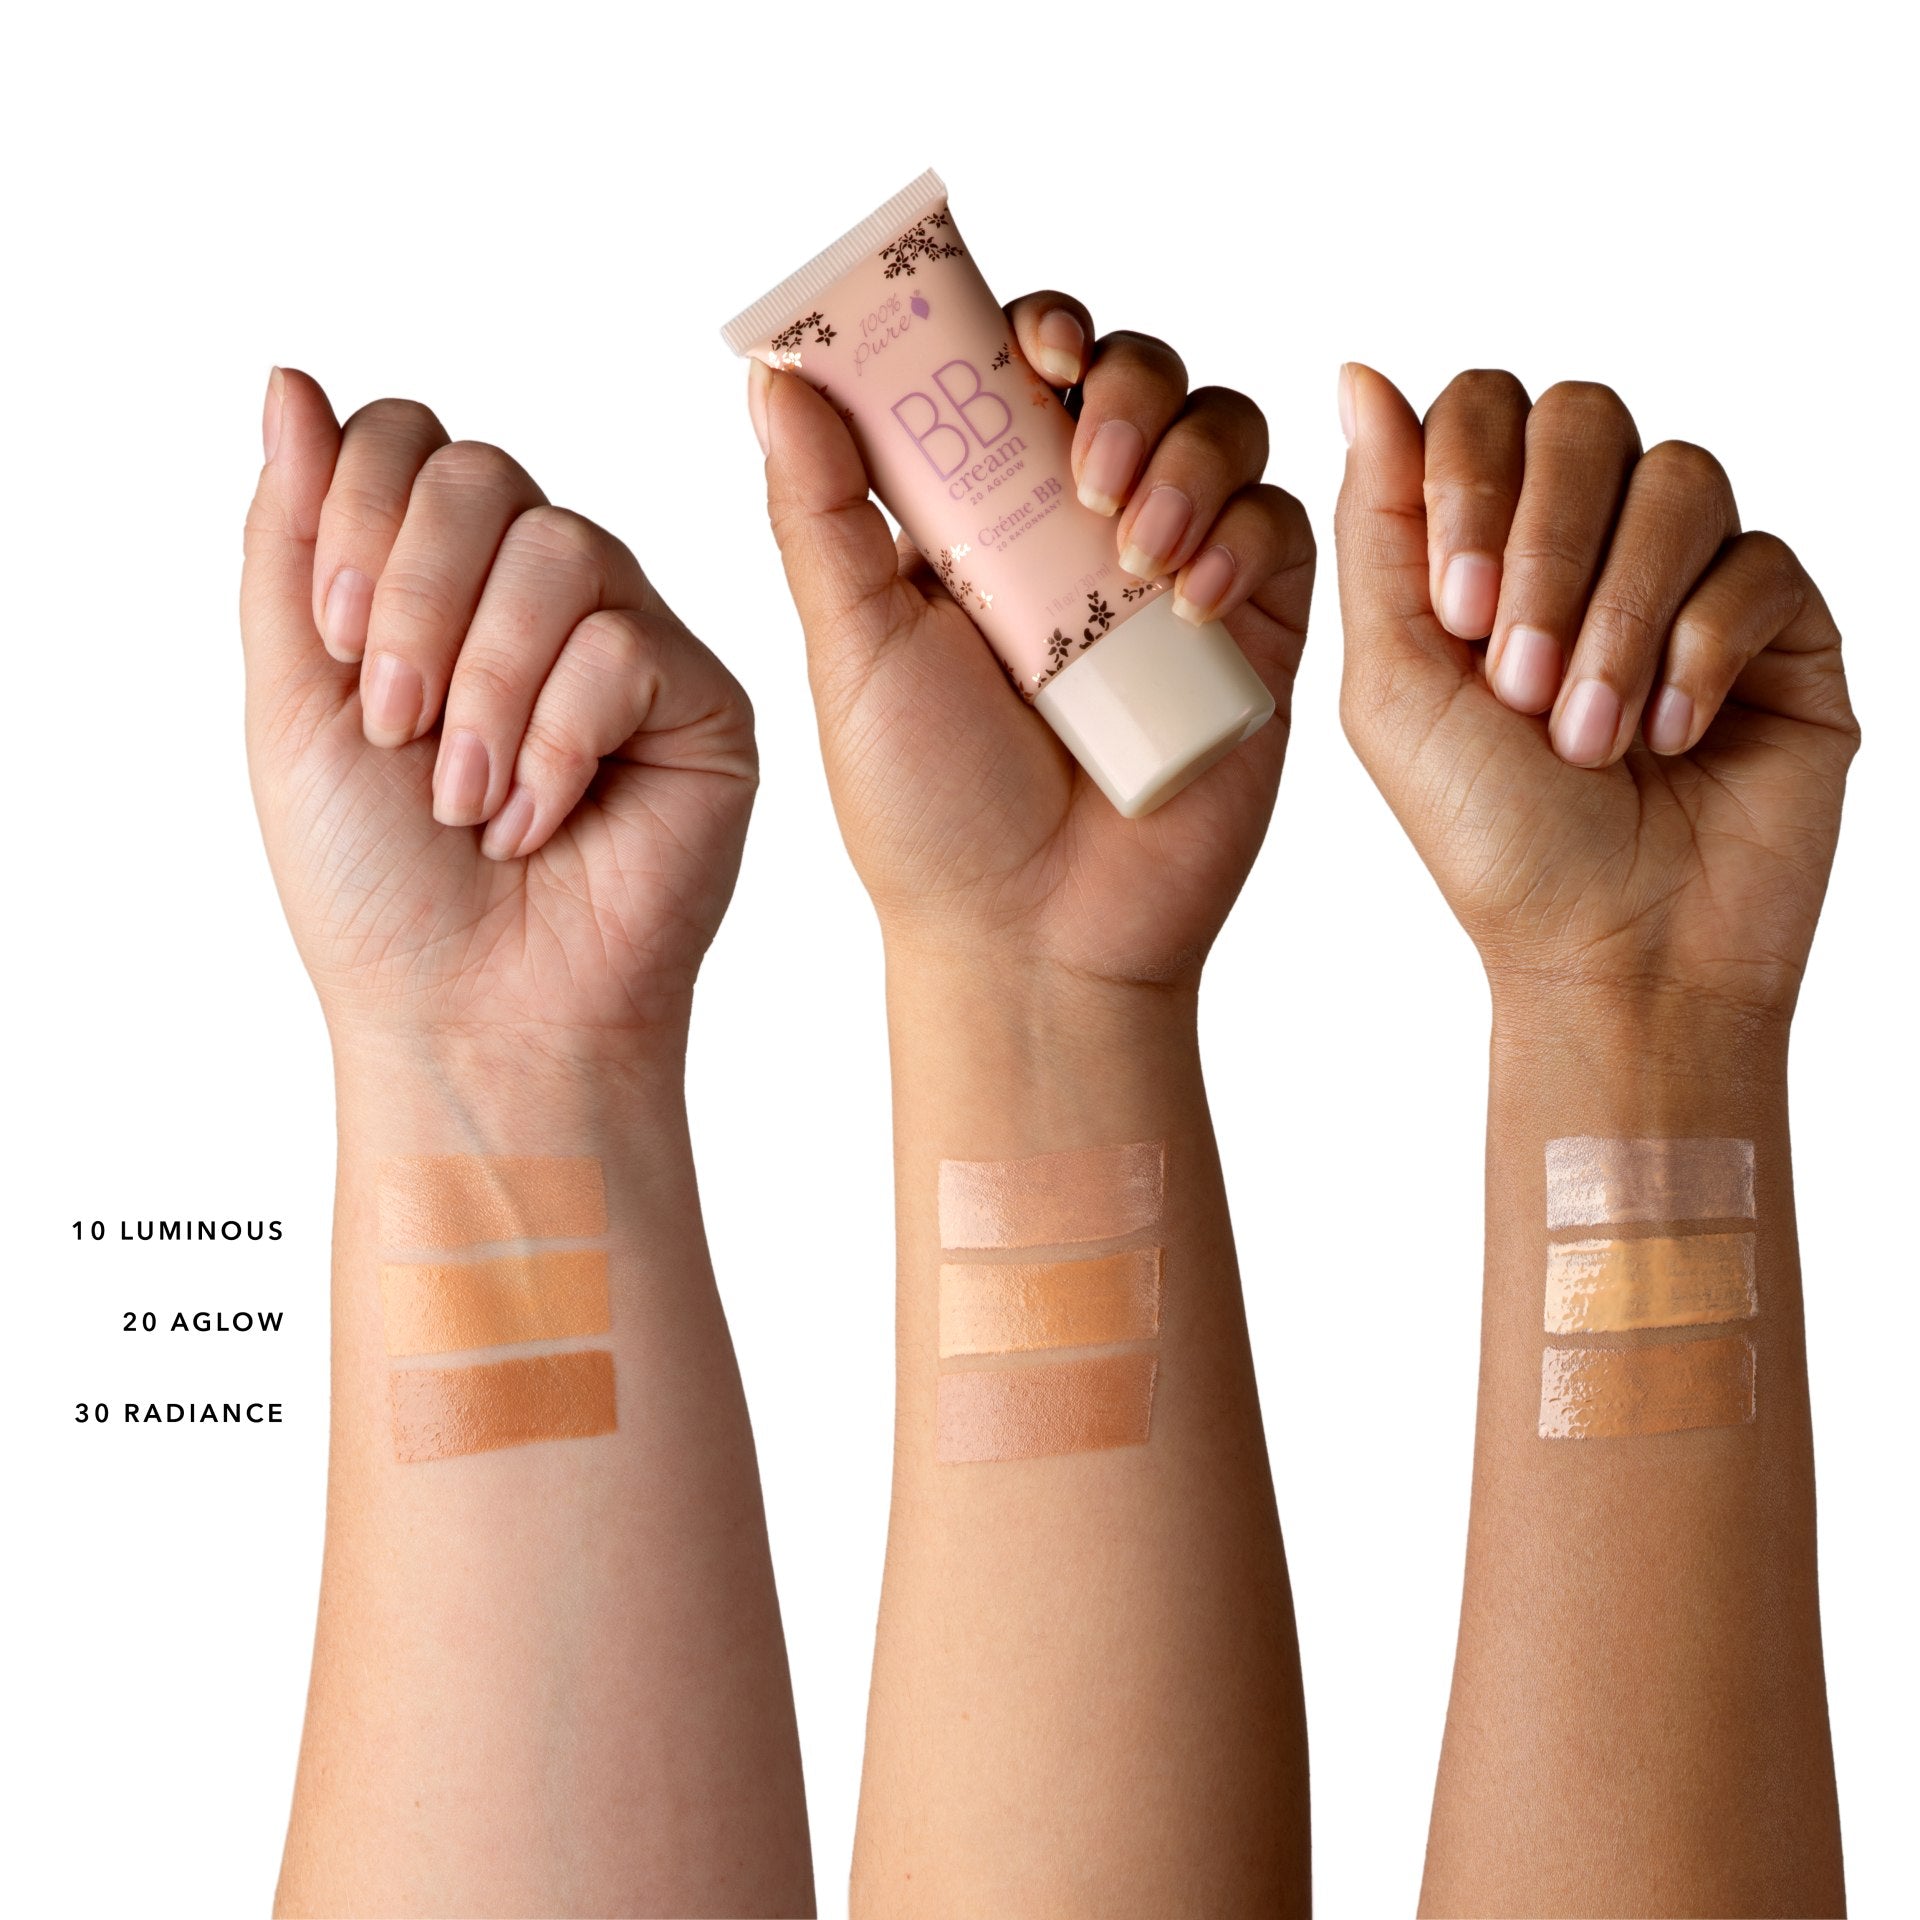 100% Pure BB Cream swatches on skin tones - light, medium & dark